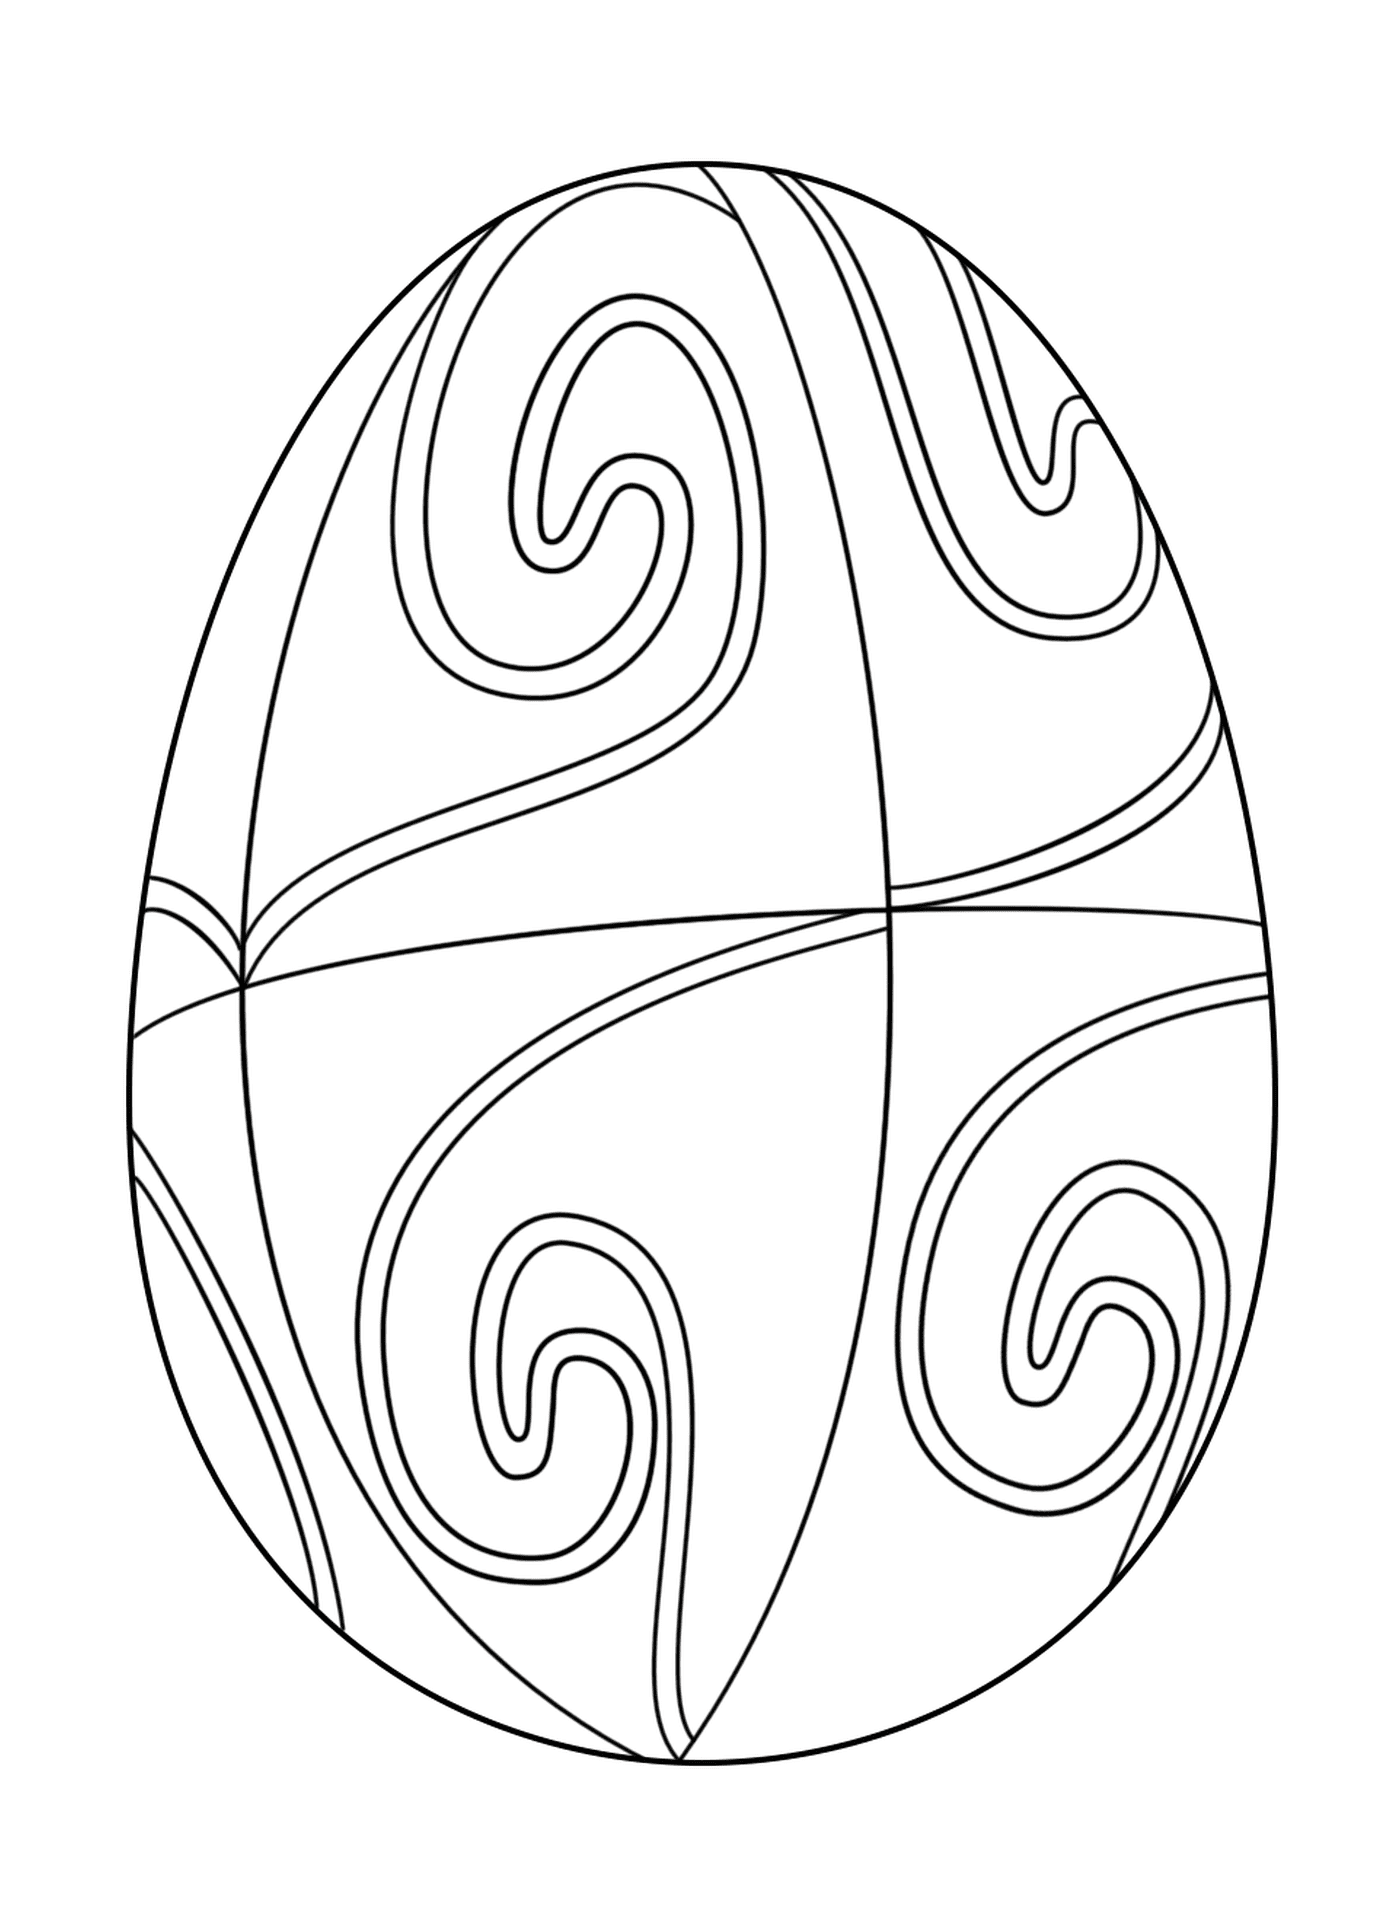  具有螺旋模式的复活节蛋蛋 